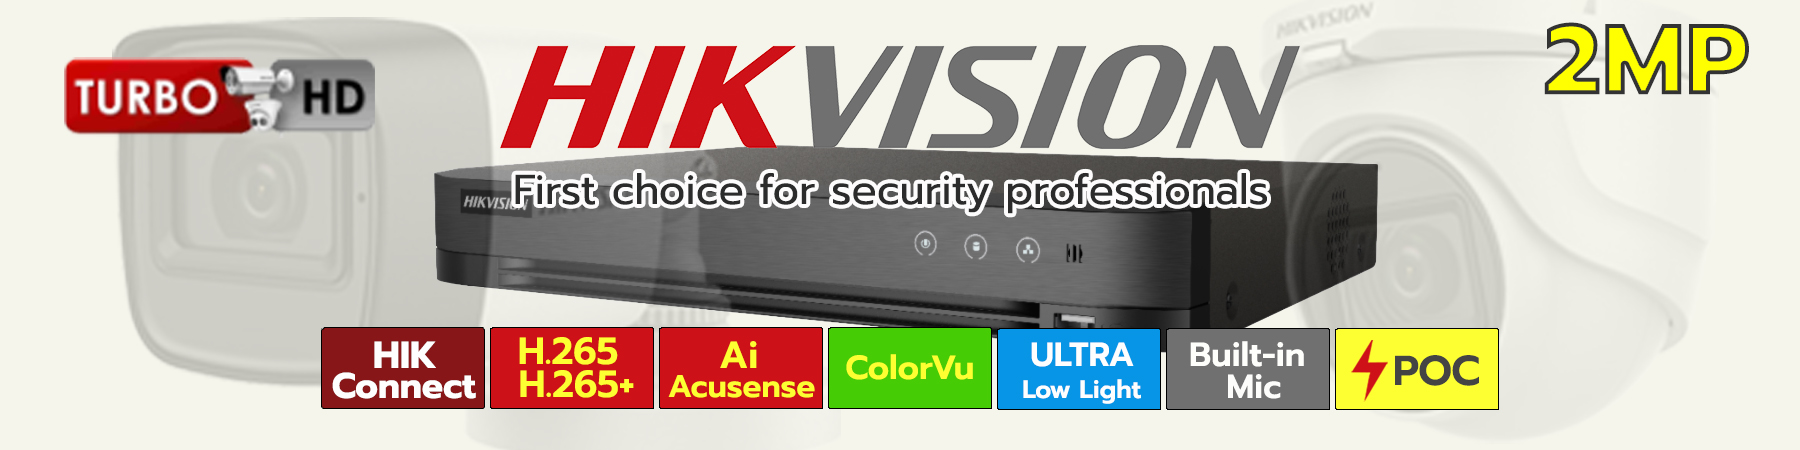 ชุดกล้อง Hikvision HDTVI 2MP, ชุดกล้อง Hikvision ไมค์ในตัว 2MP, ชุดกล้อง Hikvision ColorVu 2MP, ชุดกล้อง Hikvision Ultra Low Light 2MP, ชุดกล้อง Hikvision PoC 2MP